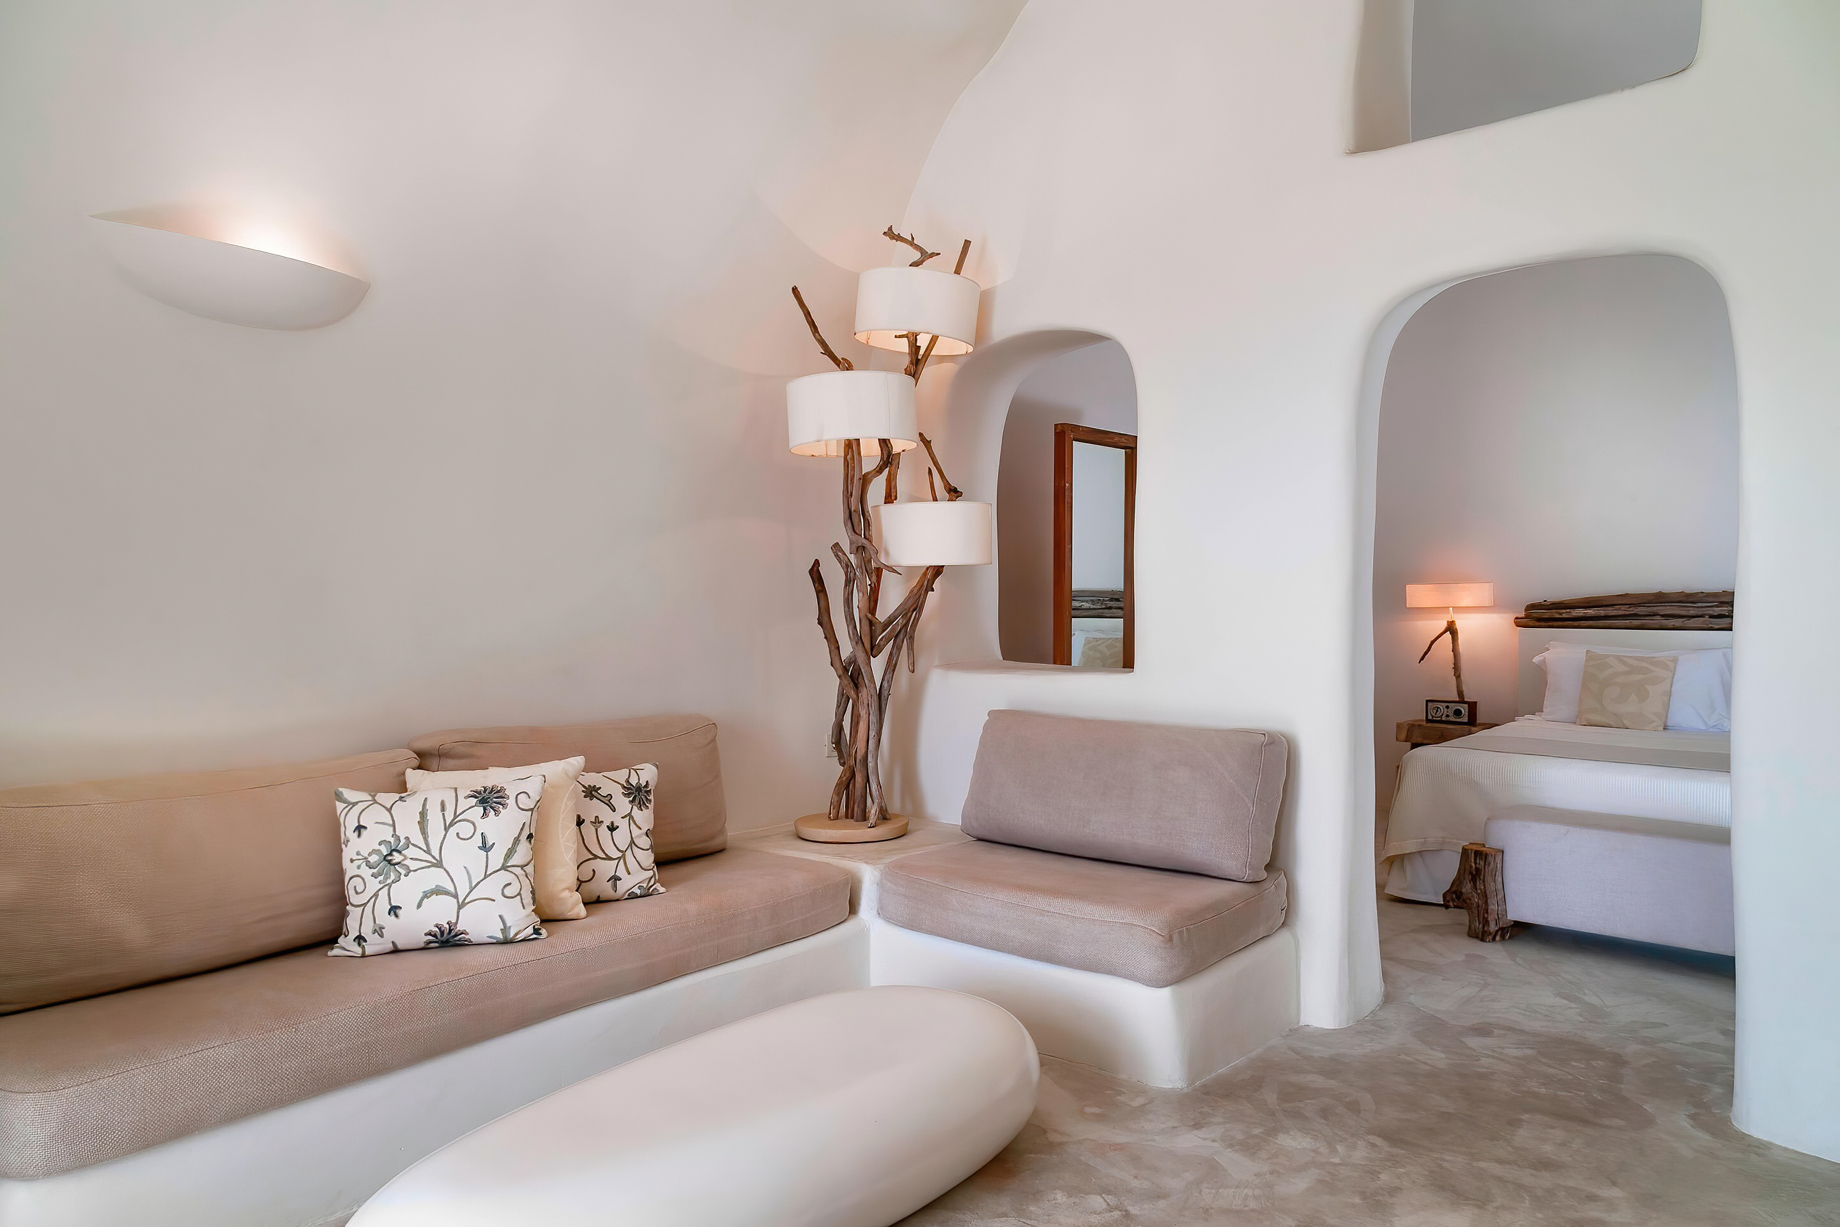 Mystique Hotel Santorini – Oia, Santorini Island, Greece – Allure Suite Living Area